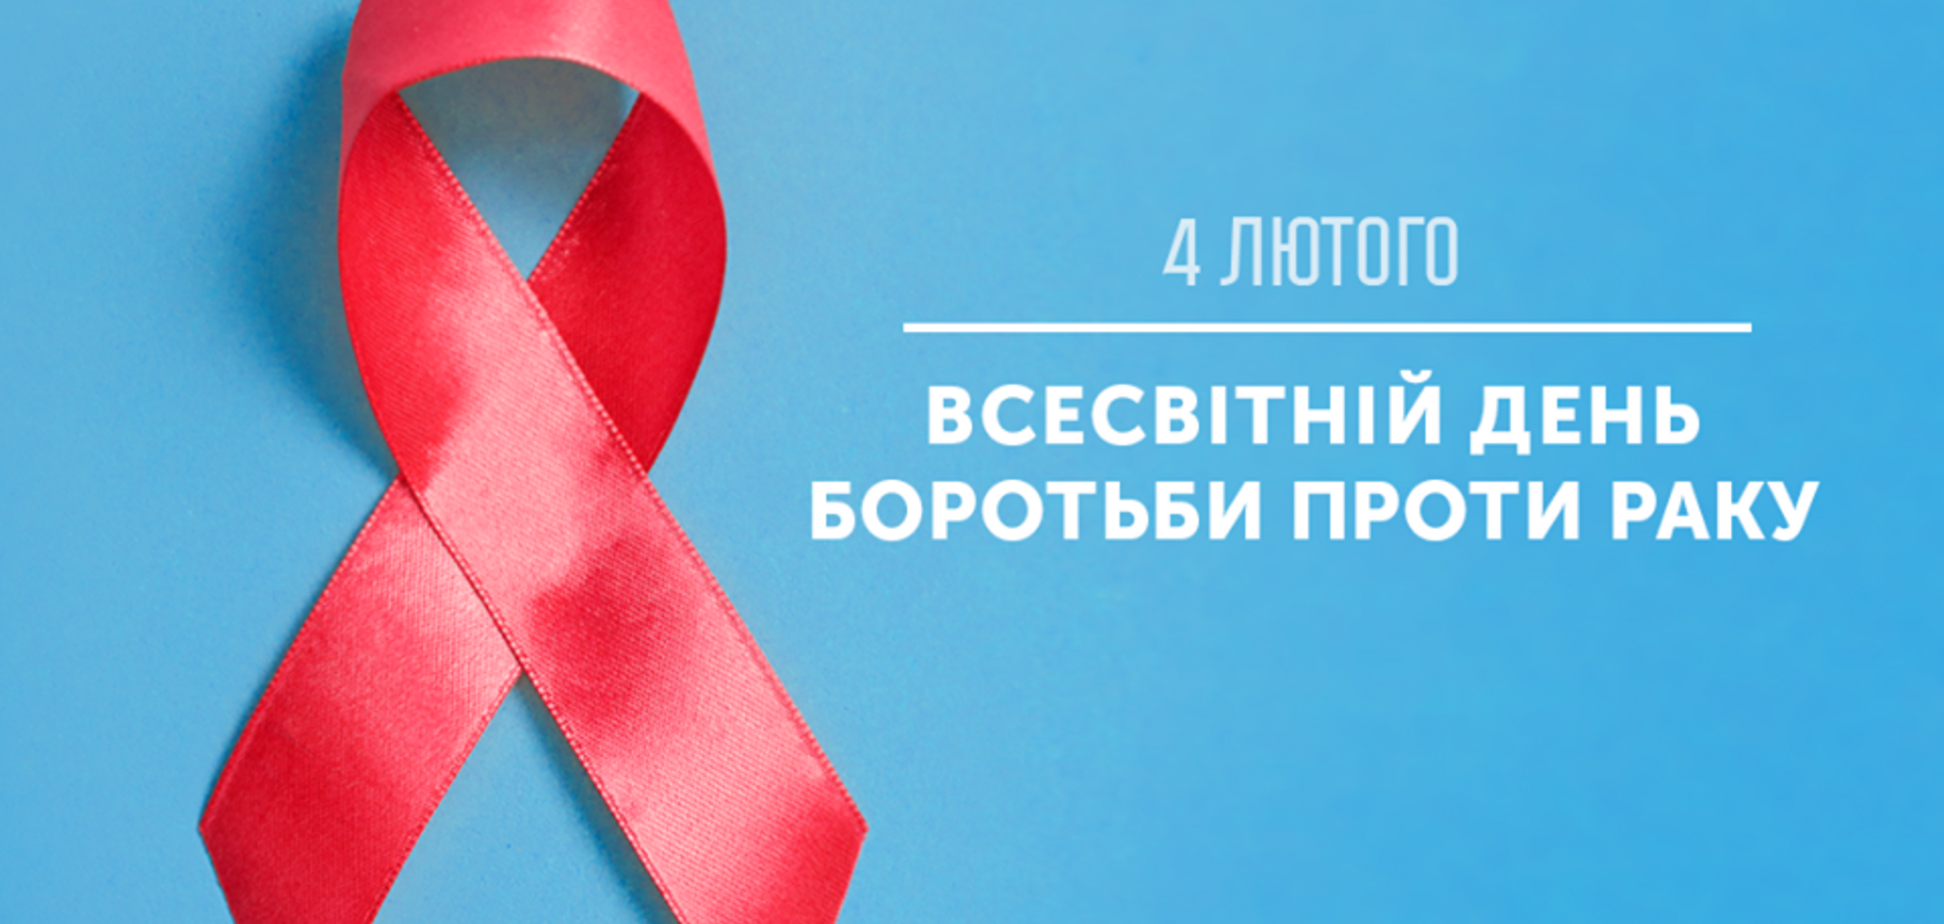 Мільйон онкохворих в Україні: пропоную Уряду запровадити програму страхування від онкохвороб